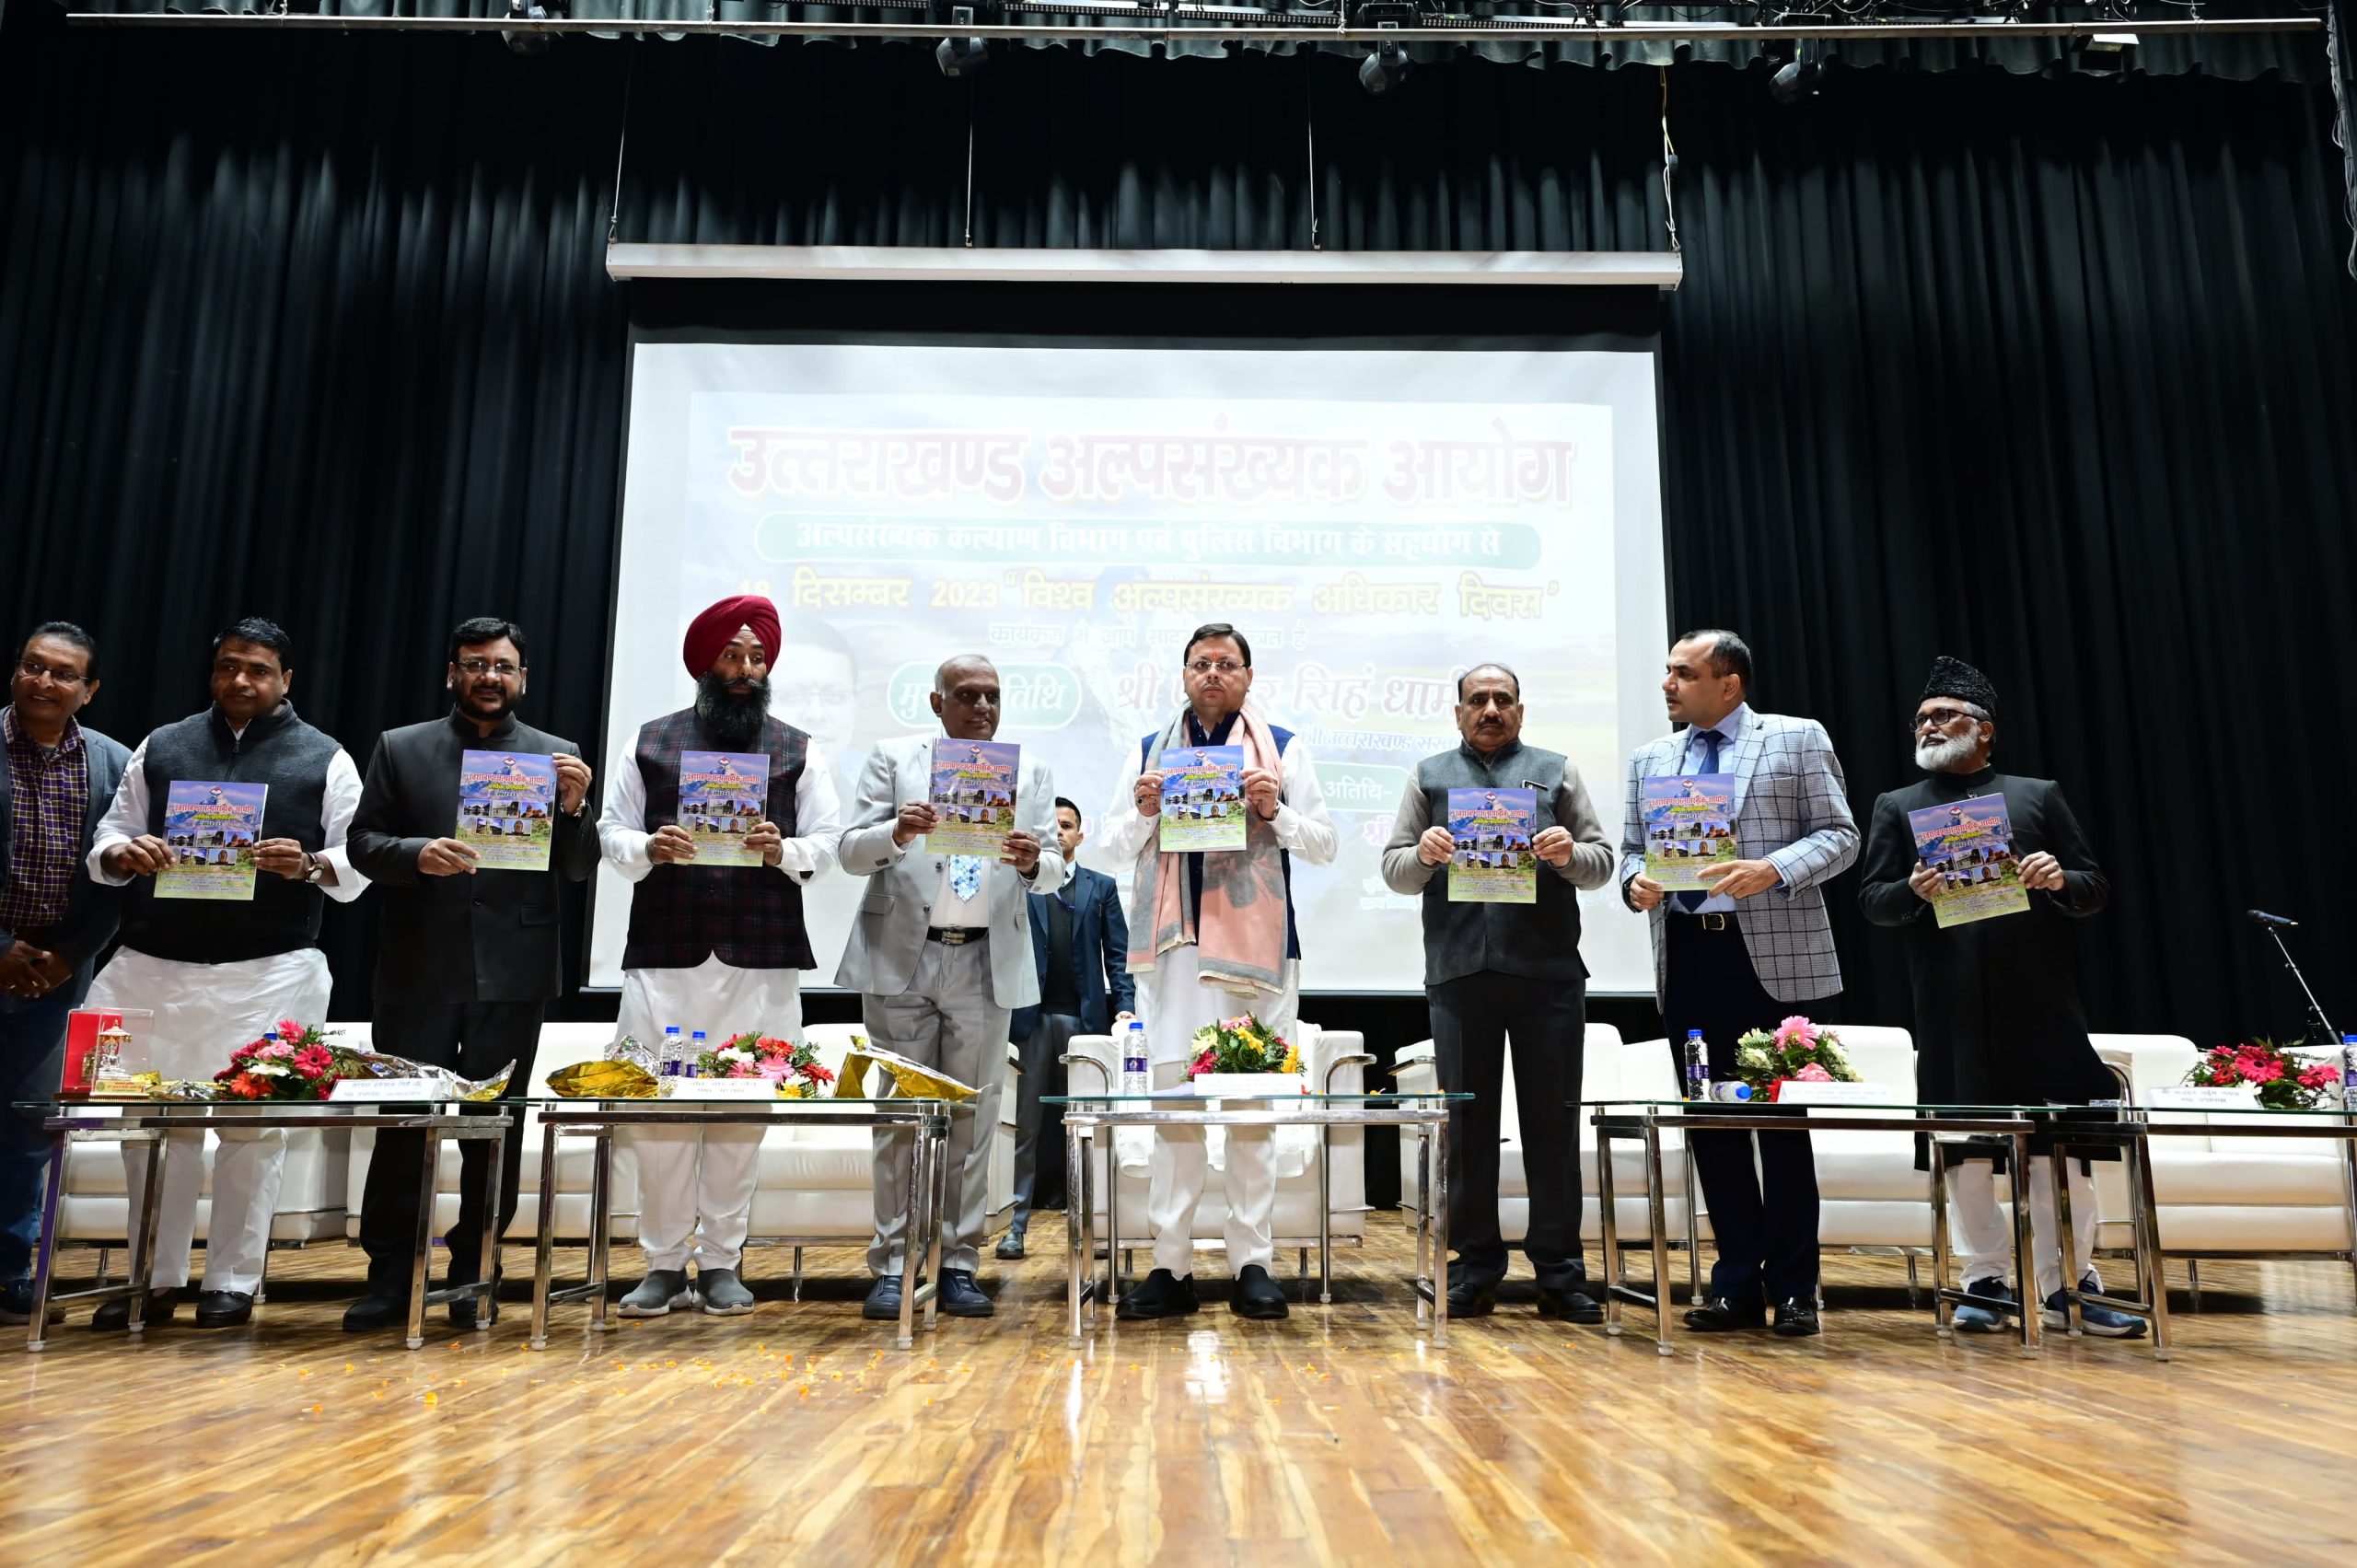 मुख्यमंत्री धामी विश्व अल्पसंख्यक अधिकार दिवस के अवसर पर हिमालयन सांस्कृतिक केन्द्र में आयोजित कार्यक्रम में किया प्रतिभाग।